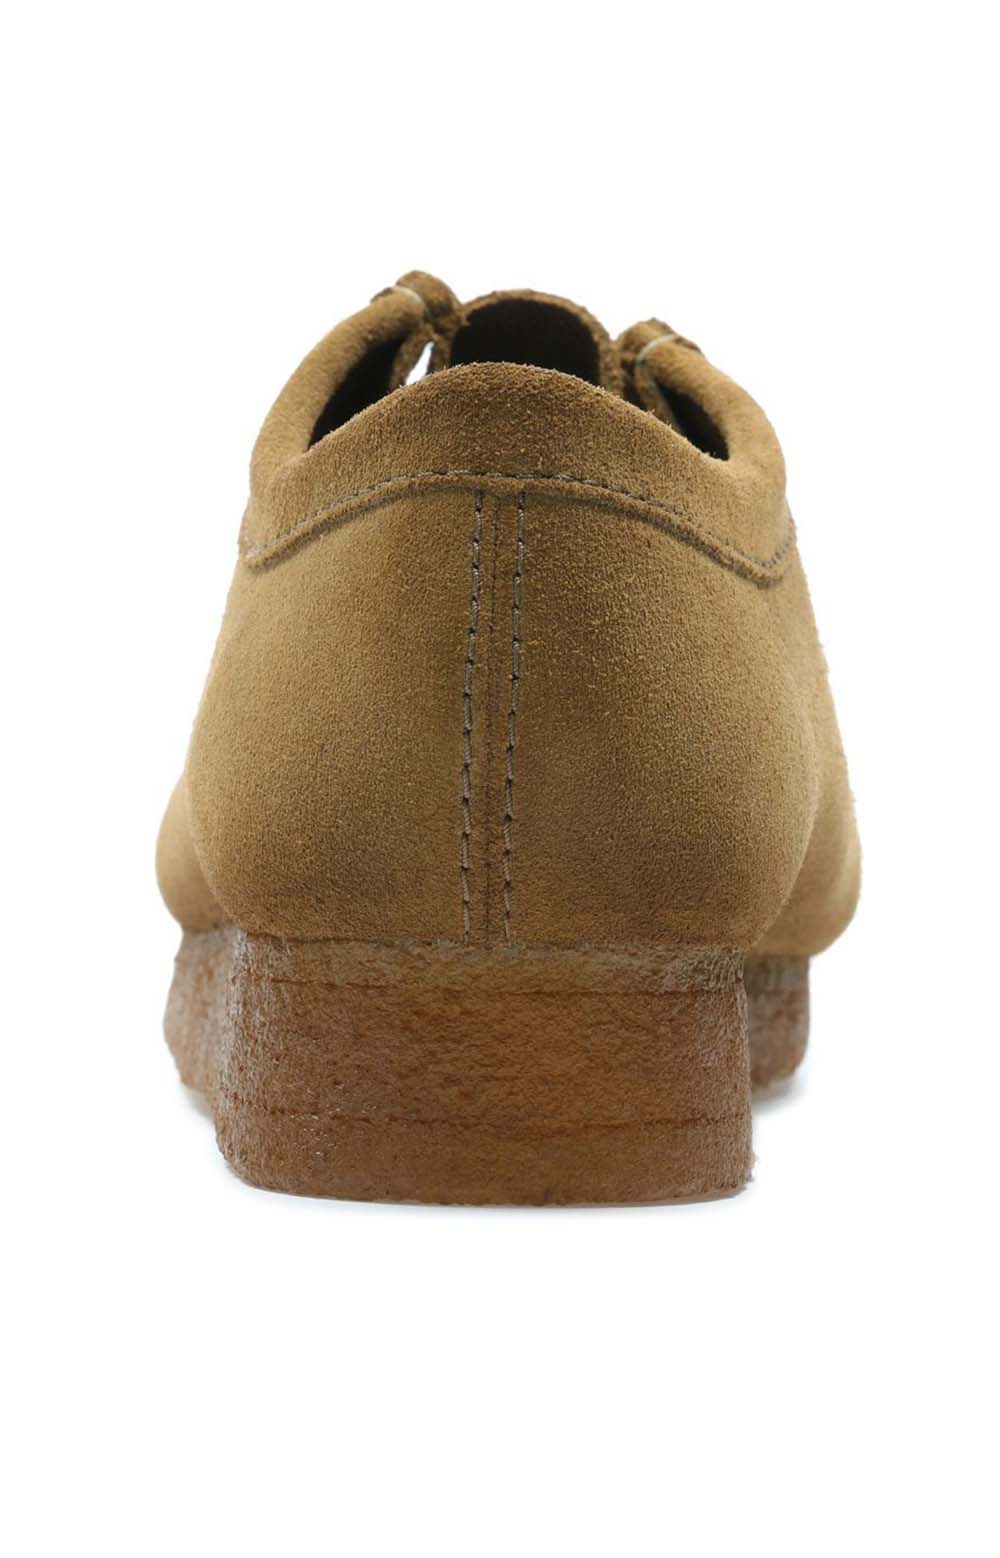 Men's feet wearing the Clarks Originals Wallabee Low Men's Cola Suede 26155518 shoe